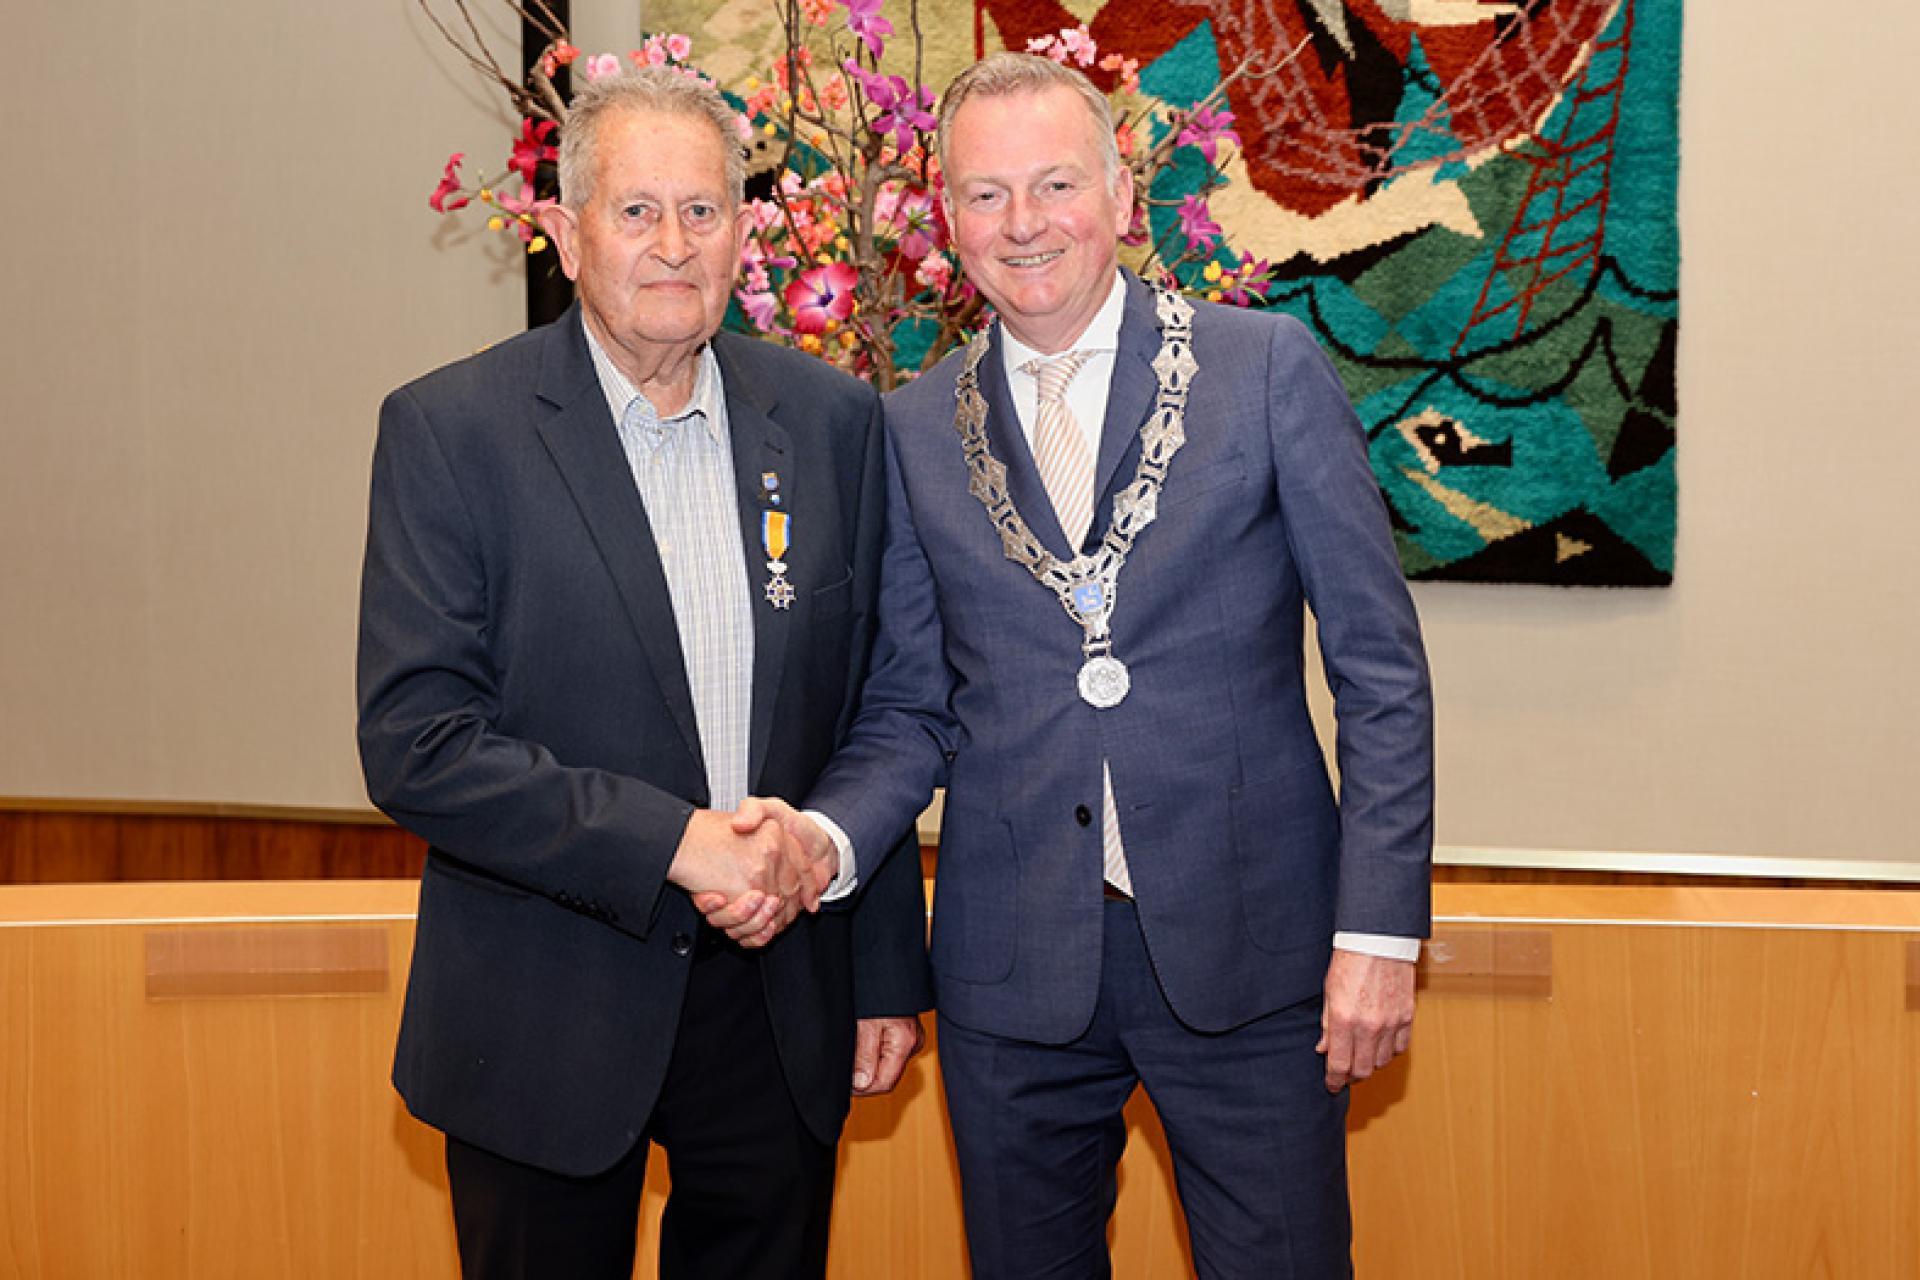 Burgemeester Frank Dales feliciteert de heer van Laar